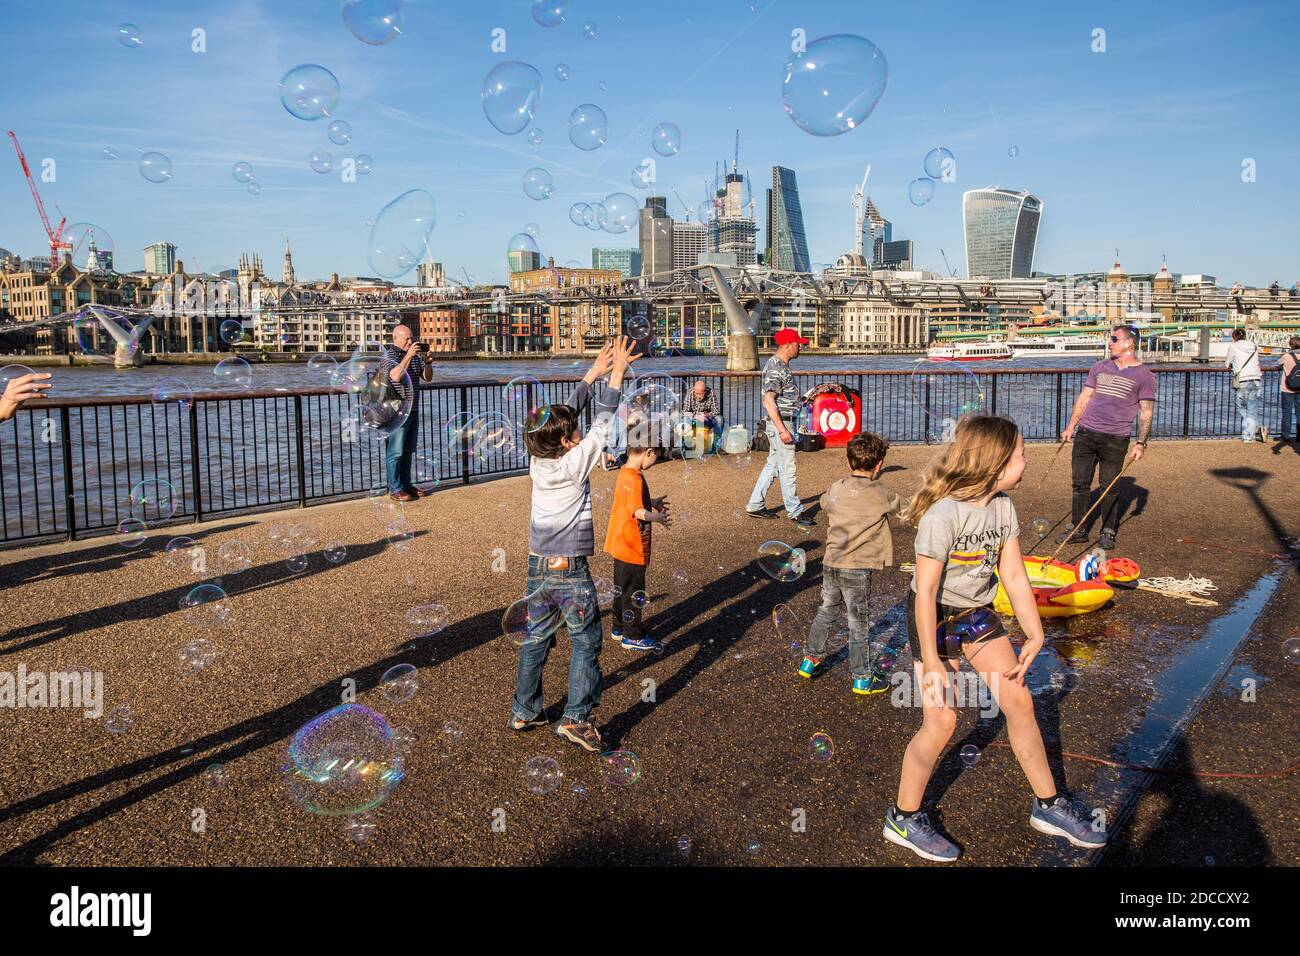 Les enfants s'amusent avec des bulles de savon lors d'une chaude journée d'été avec une vue sur la Tamise, à la ville de Londres, Londres, Grande-Bretagne. Banque D'Images